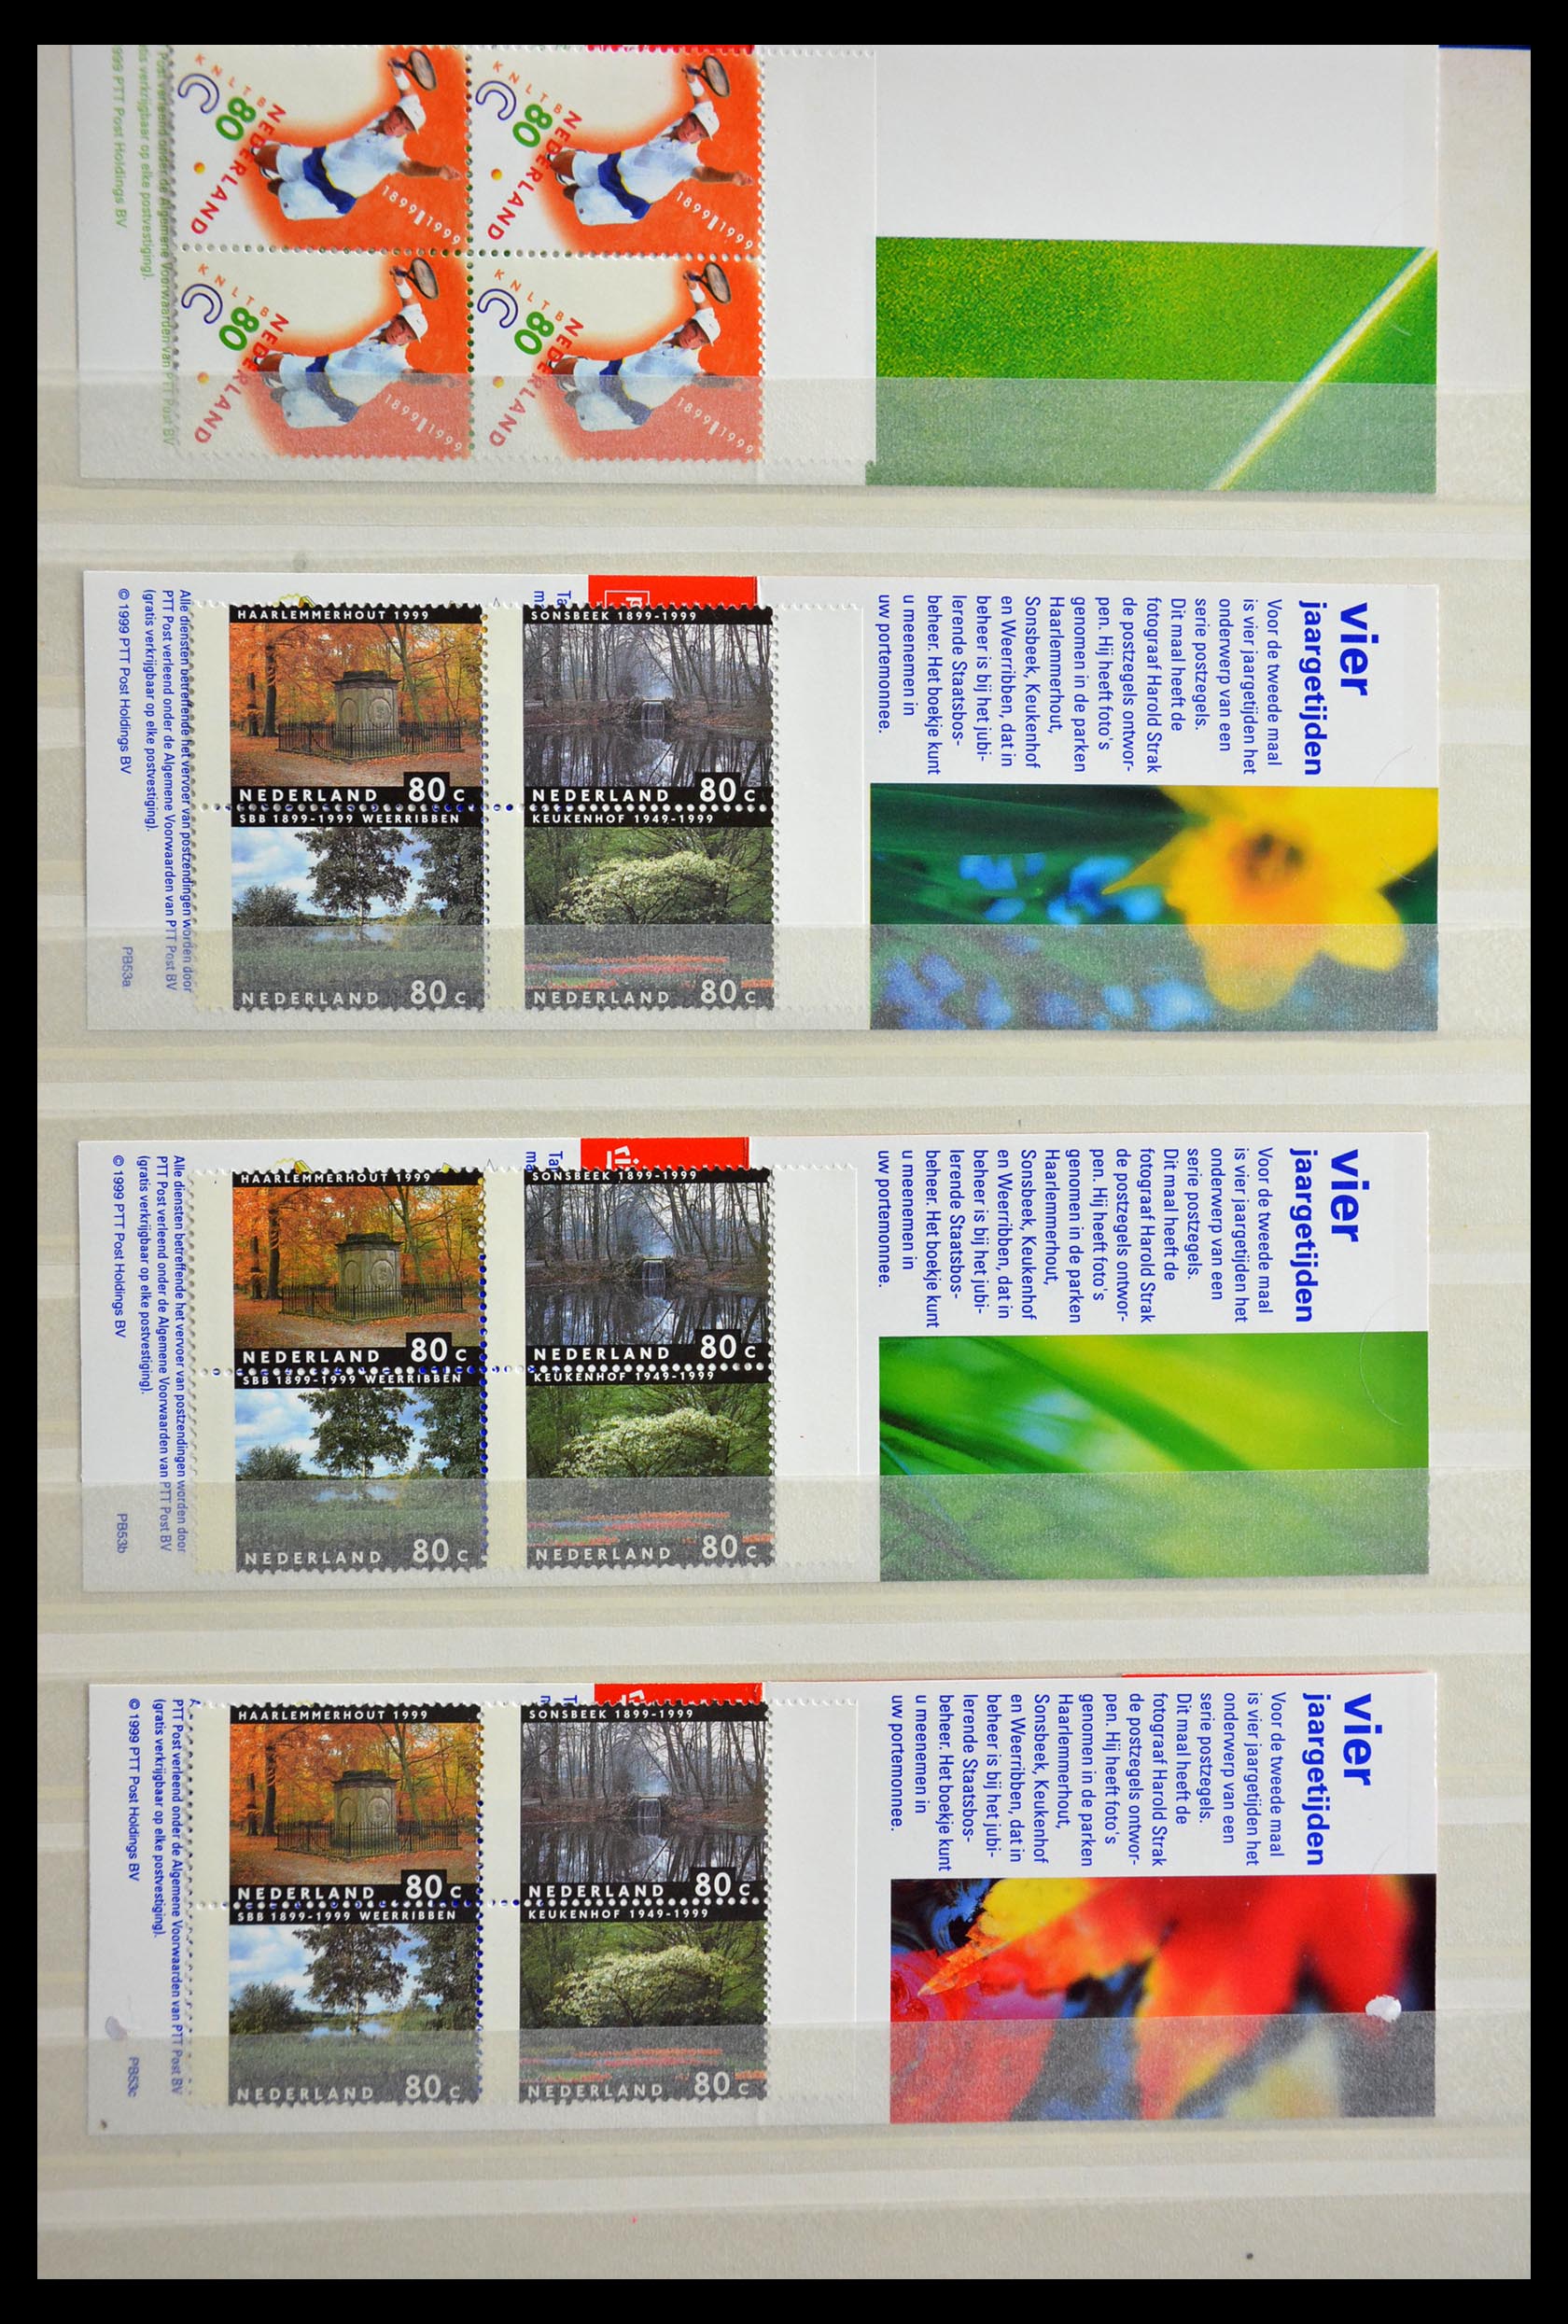 29387 019 - 29387 Netherlands stamp booklets 1964-2014.